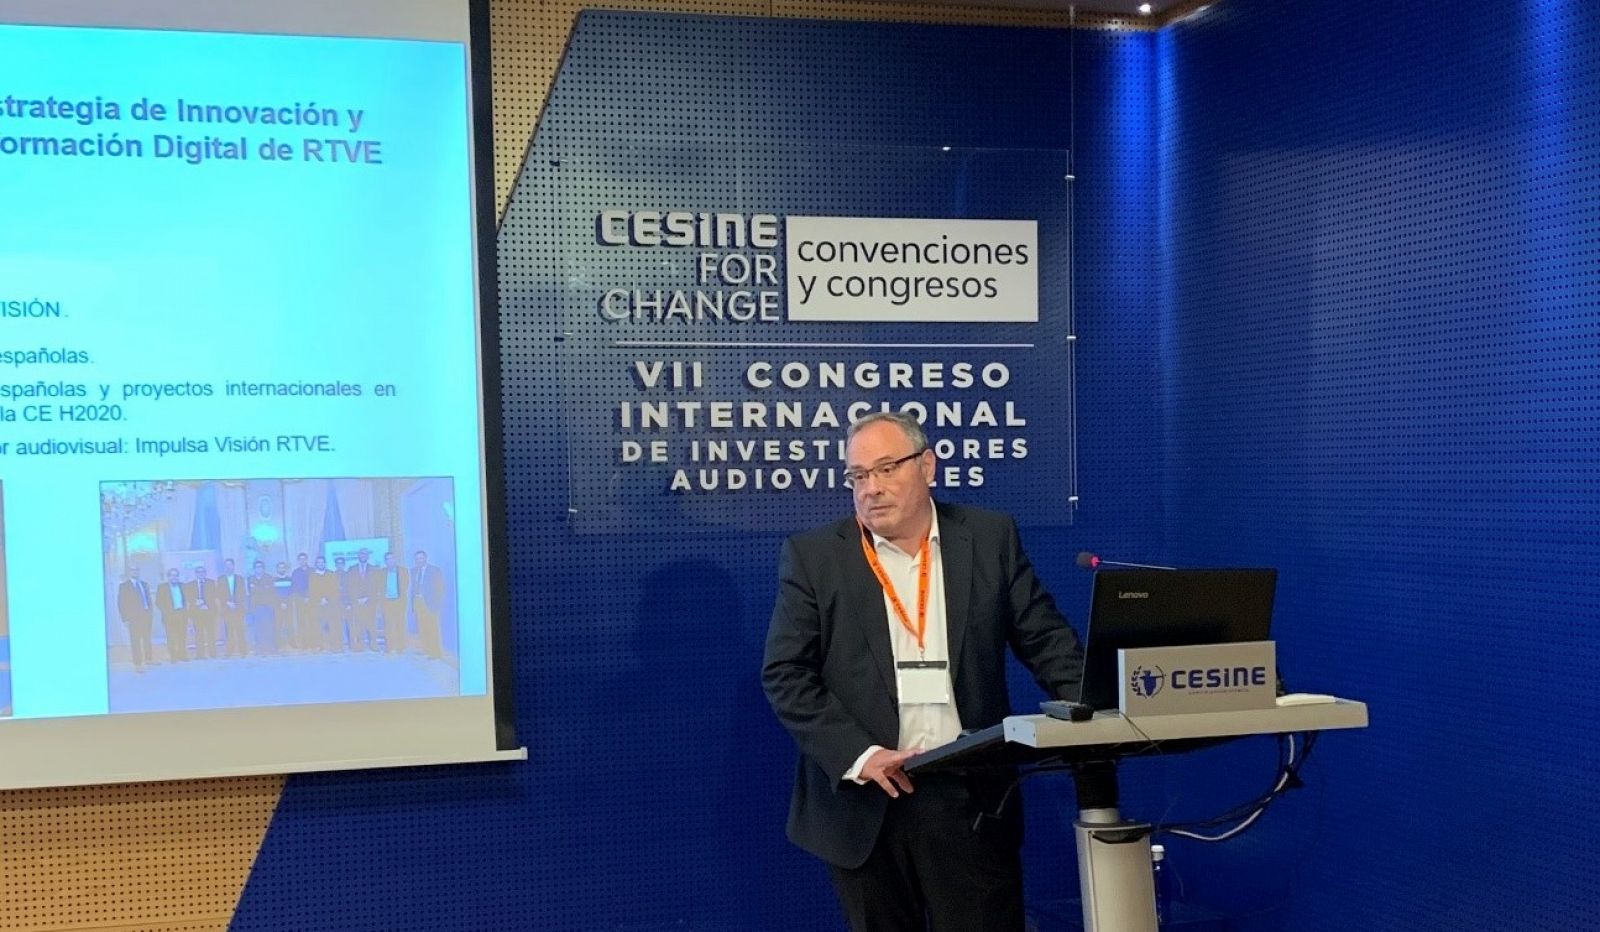 Impulsa Visi�n participa en el VII Congreso Internacional de Investigadores Audiovisuales CESINE 2019